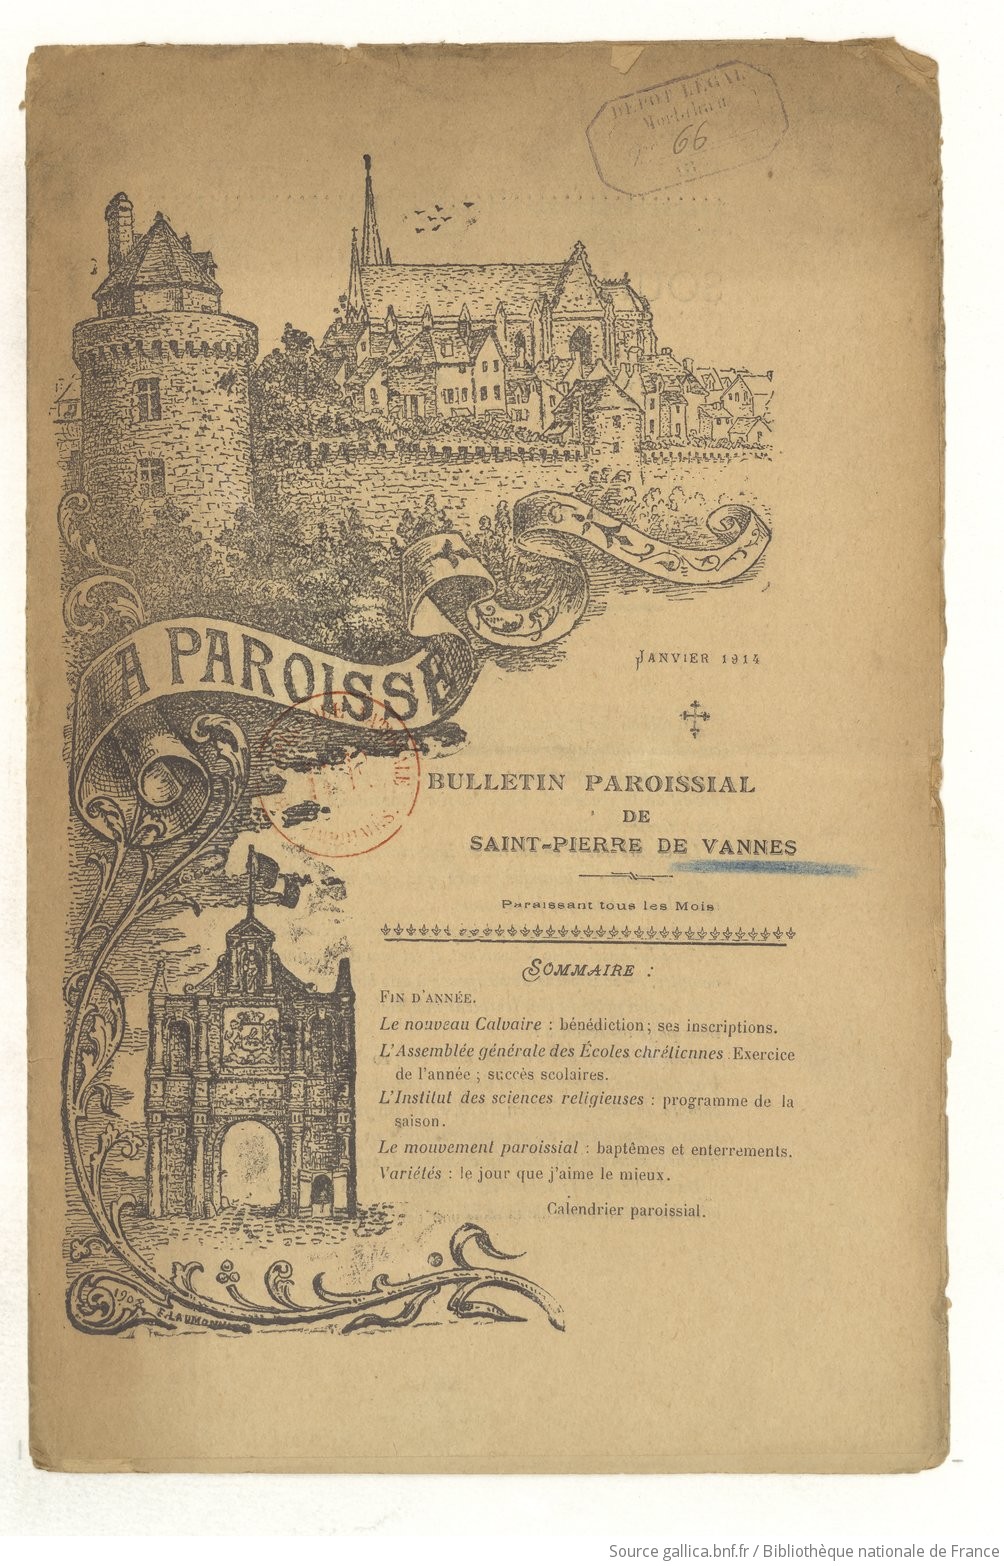 Bulletin paroissial de Vannes -  paroisse de Saint-Pierre - janvier 1914 | 